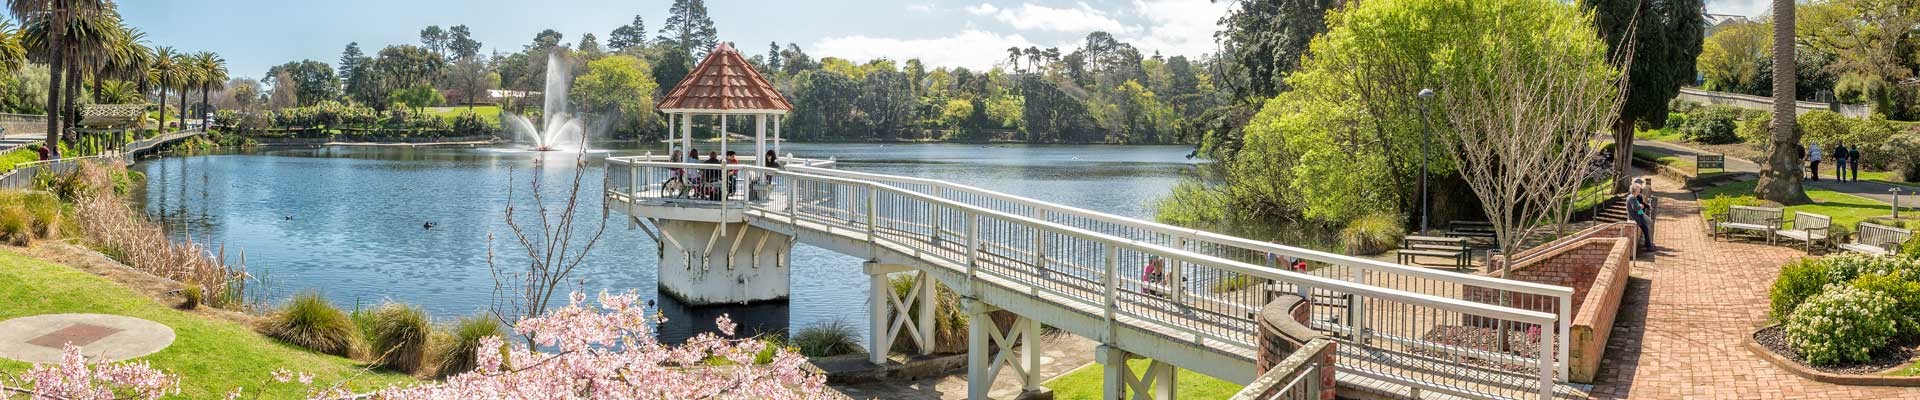 Whanganui River and Heritage Homes